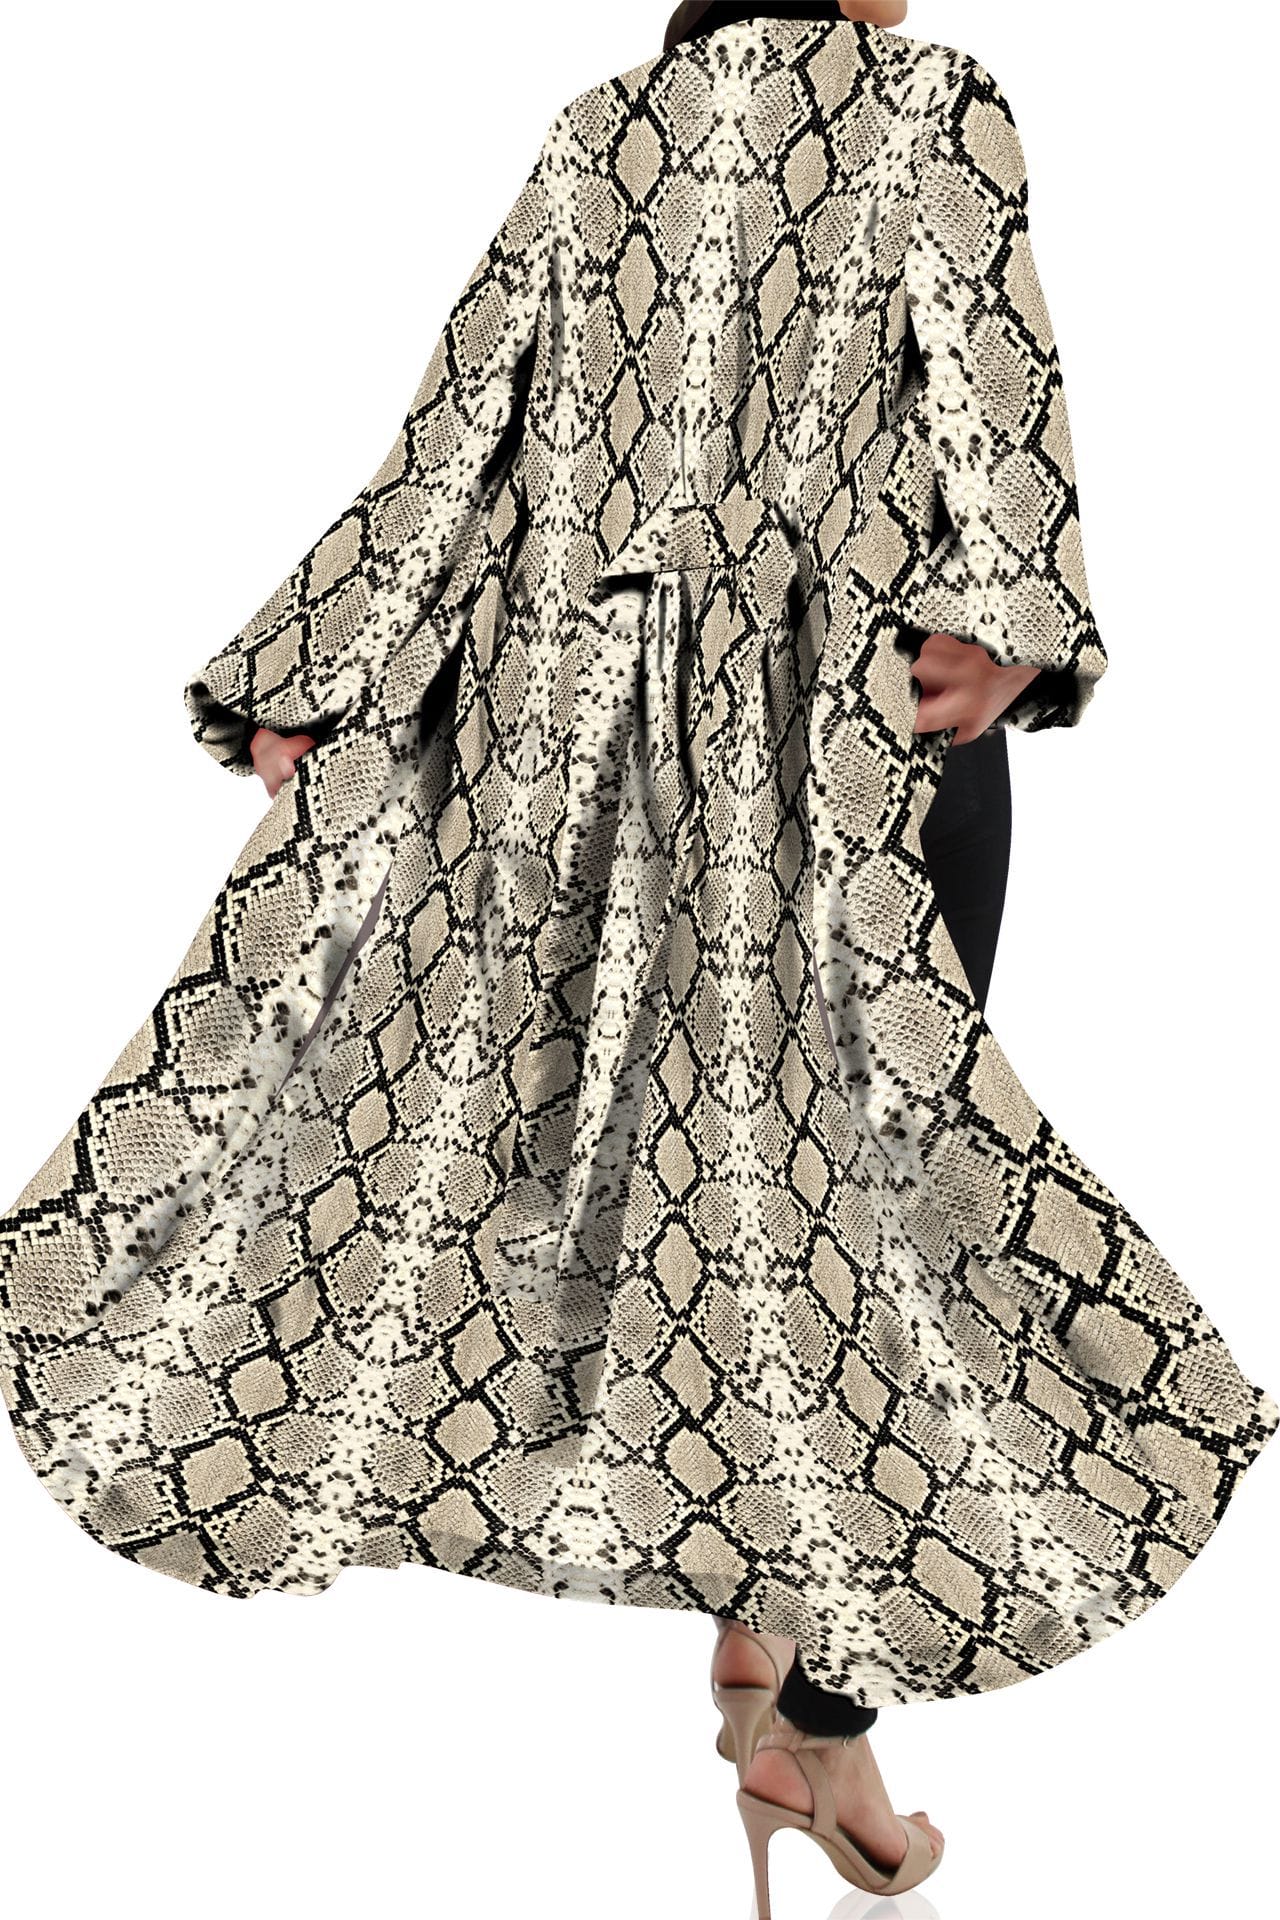 "Kyle X Shahida" "plus size long kimono" "animal print robe" "robe silk kimono" "belted kimono"